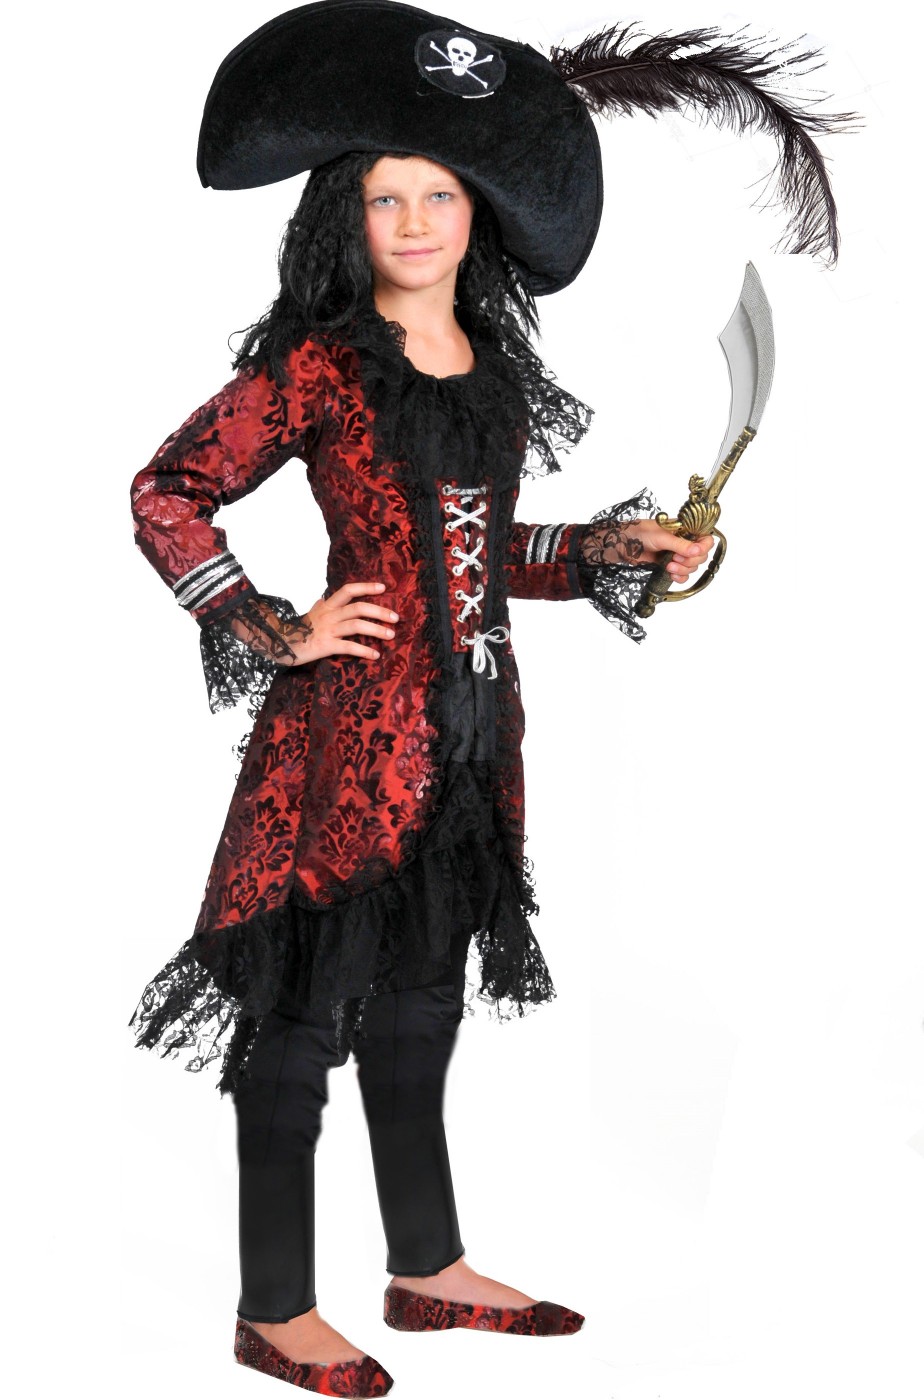 Costume dì Carnevale pirata Bambina - Feste - Carnevale - di Moment